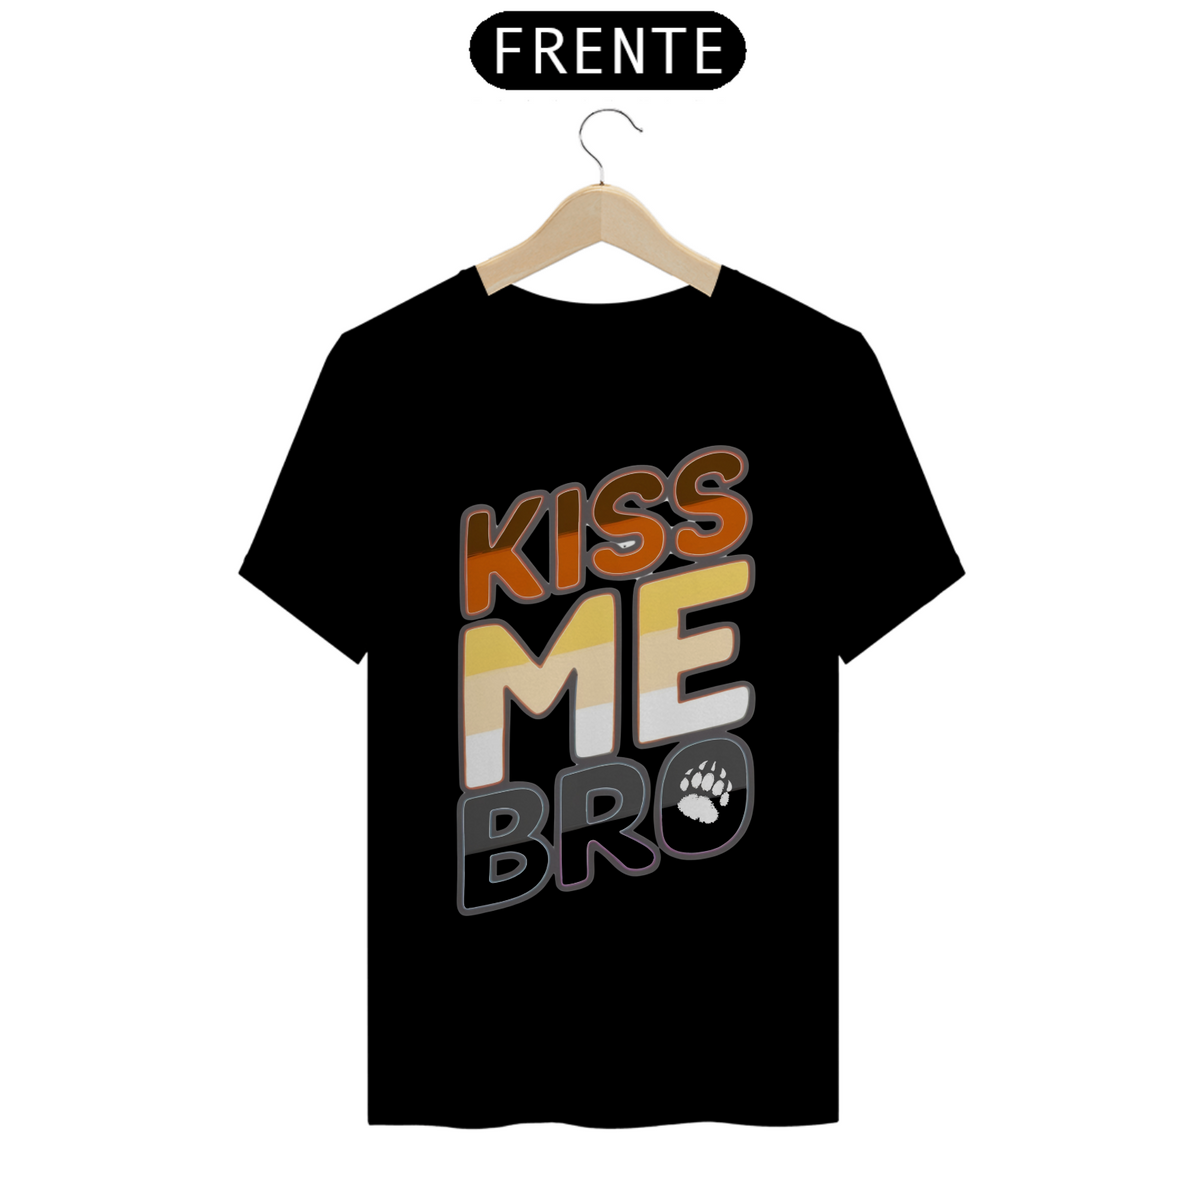 Nome do produto: Kiss me Bro - Quality